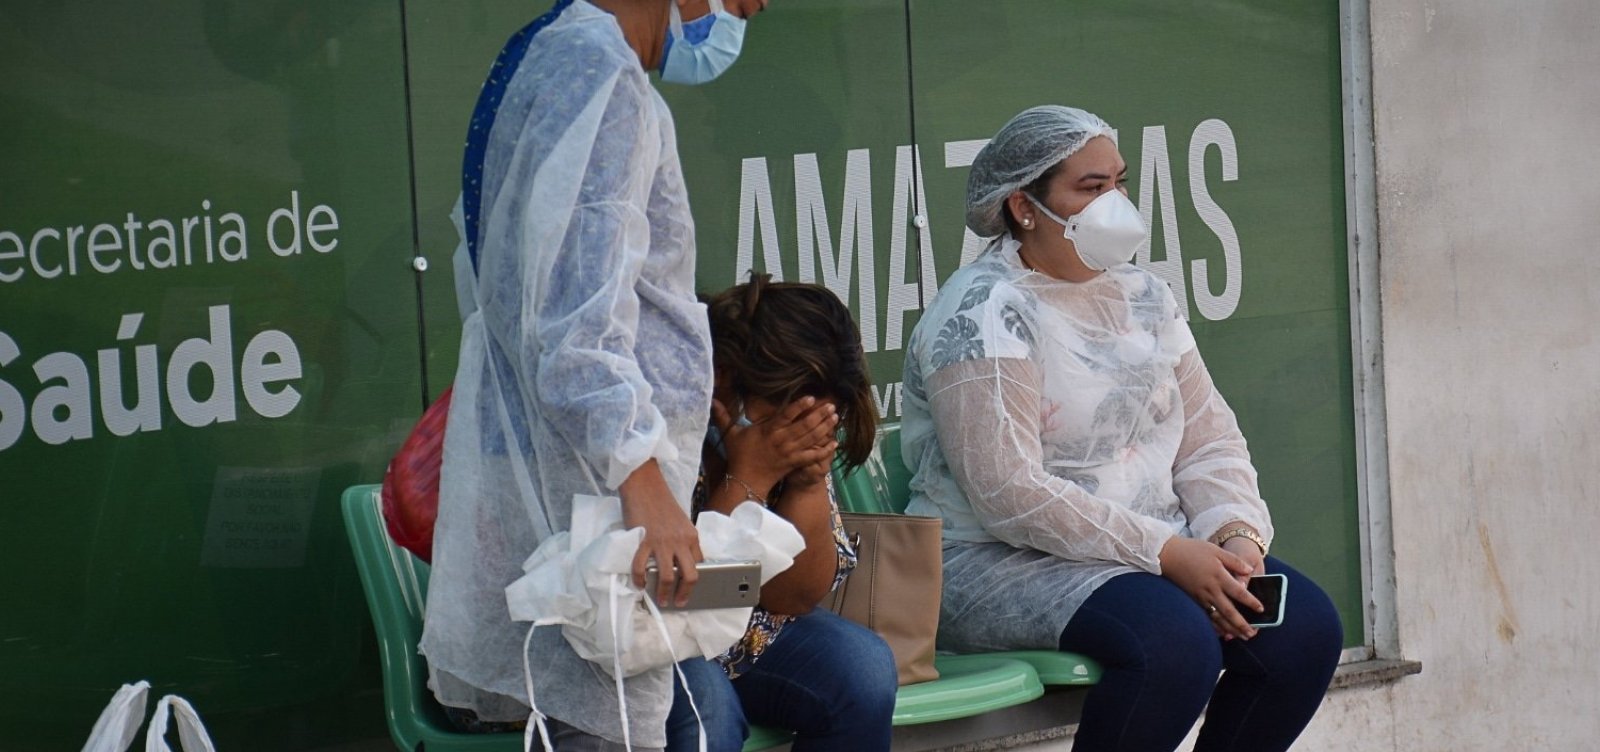 Governo Bolsonaro ignorou série de alertas sobre falta de oxigênio em Manaus